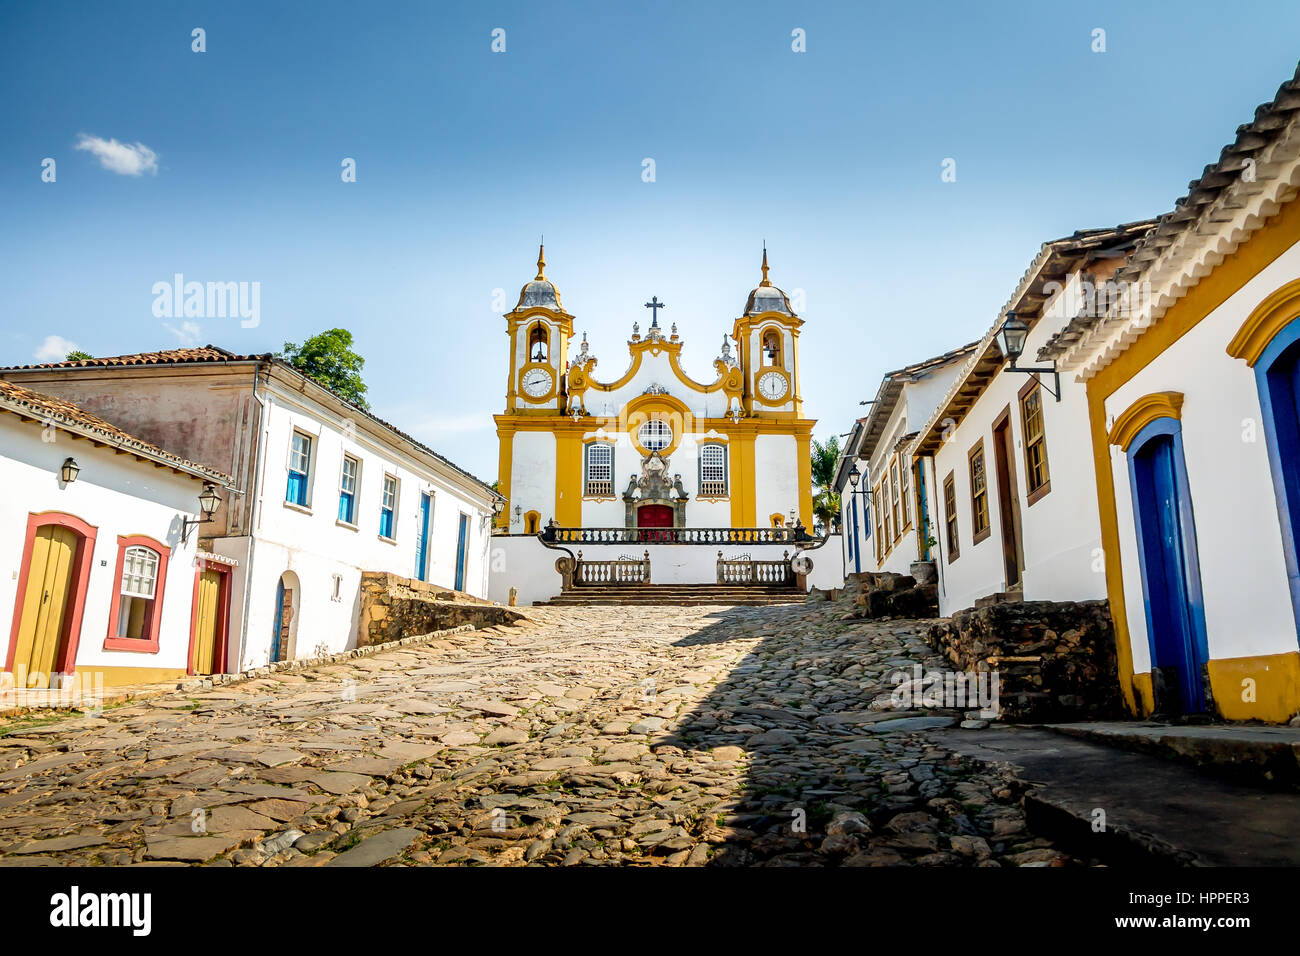 Bunten Häusern im Kolonialstil und Kirche in Stadt Tiradentes - Minas Gerais, Brasilien Stockfoto